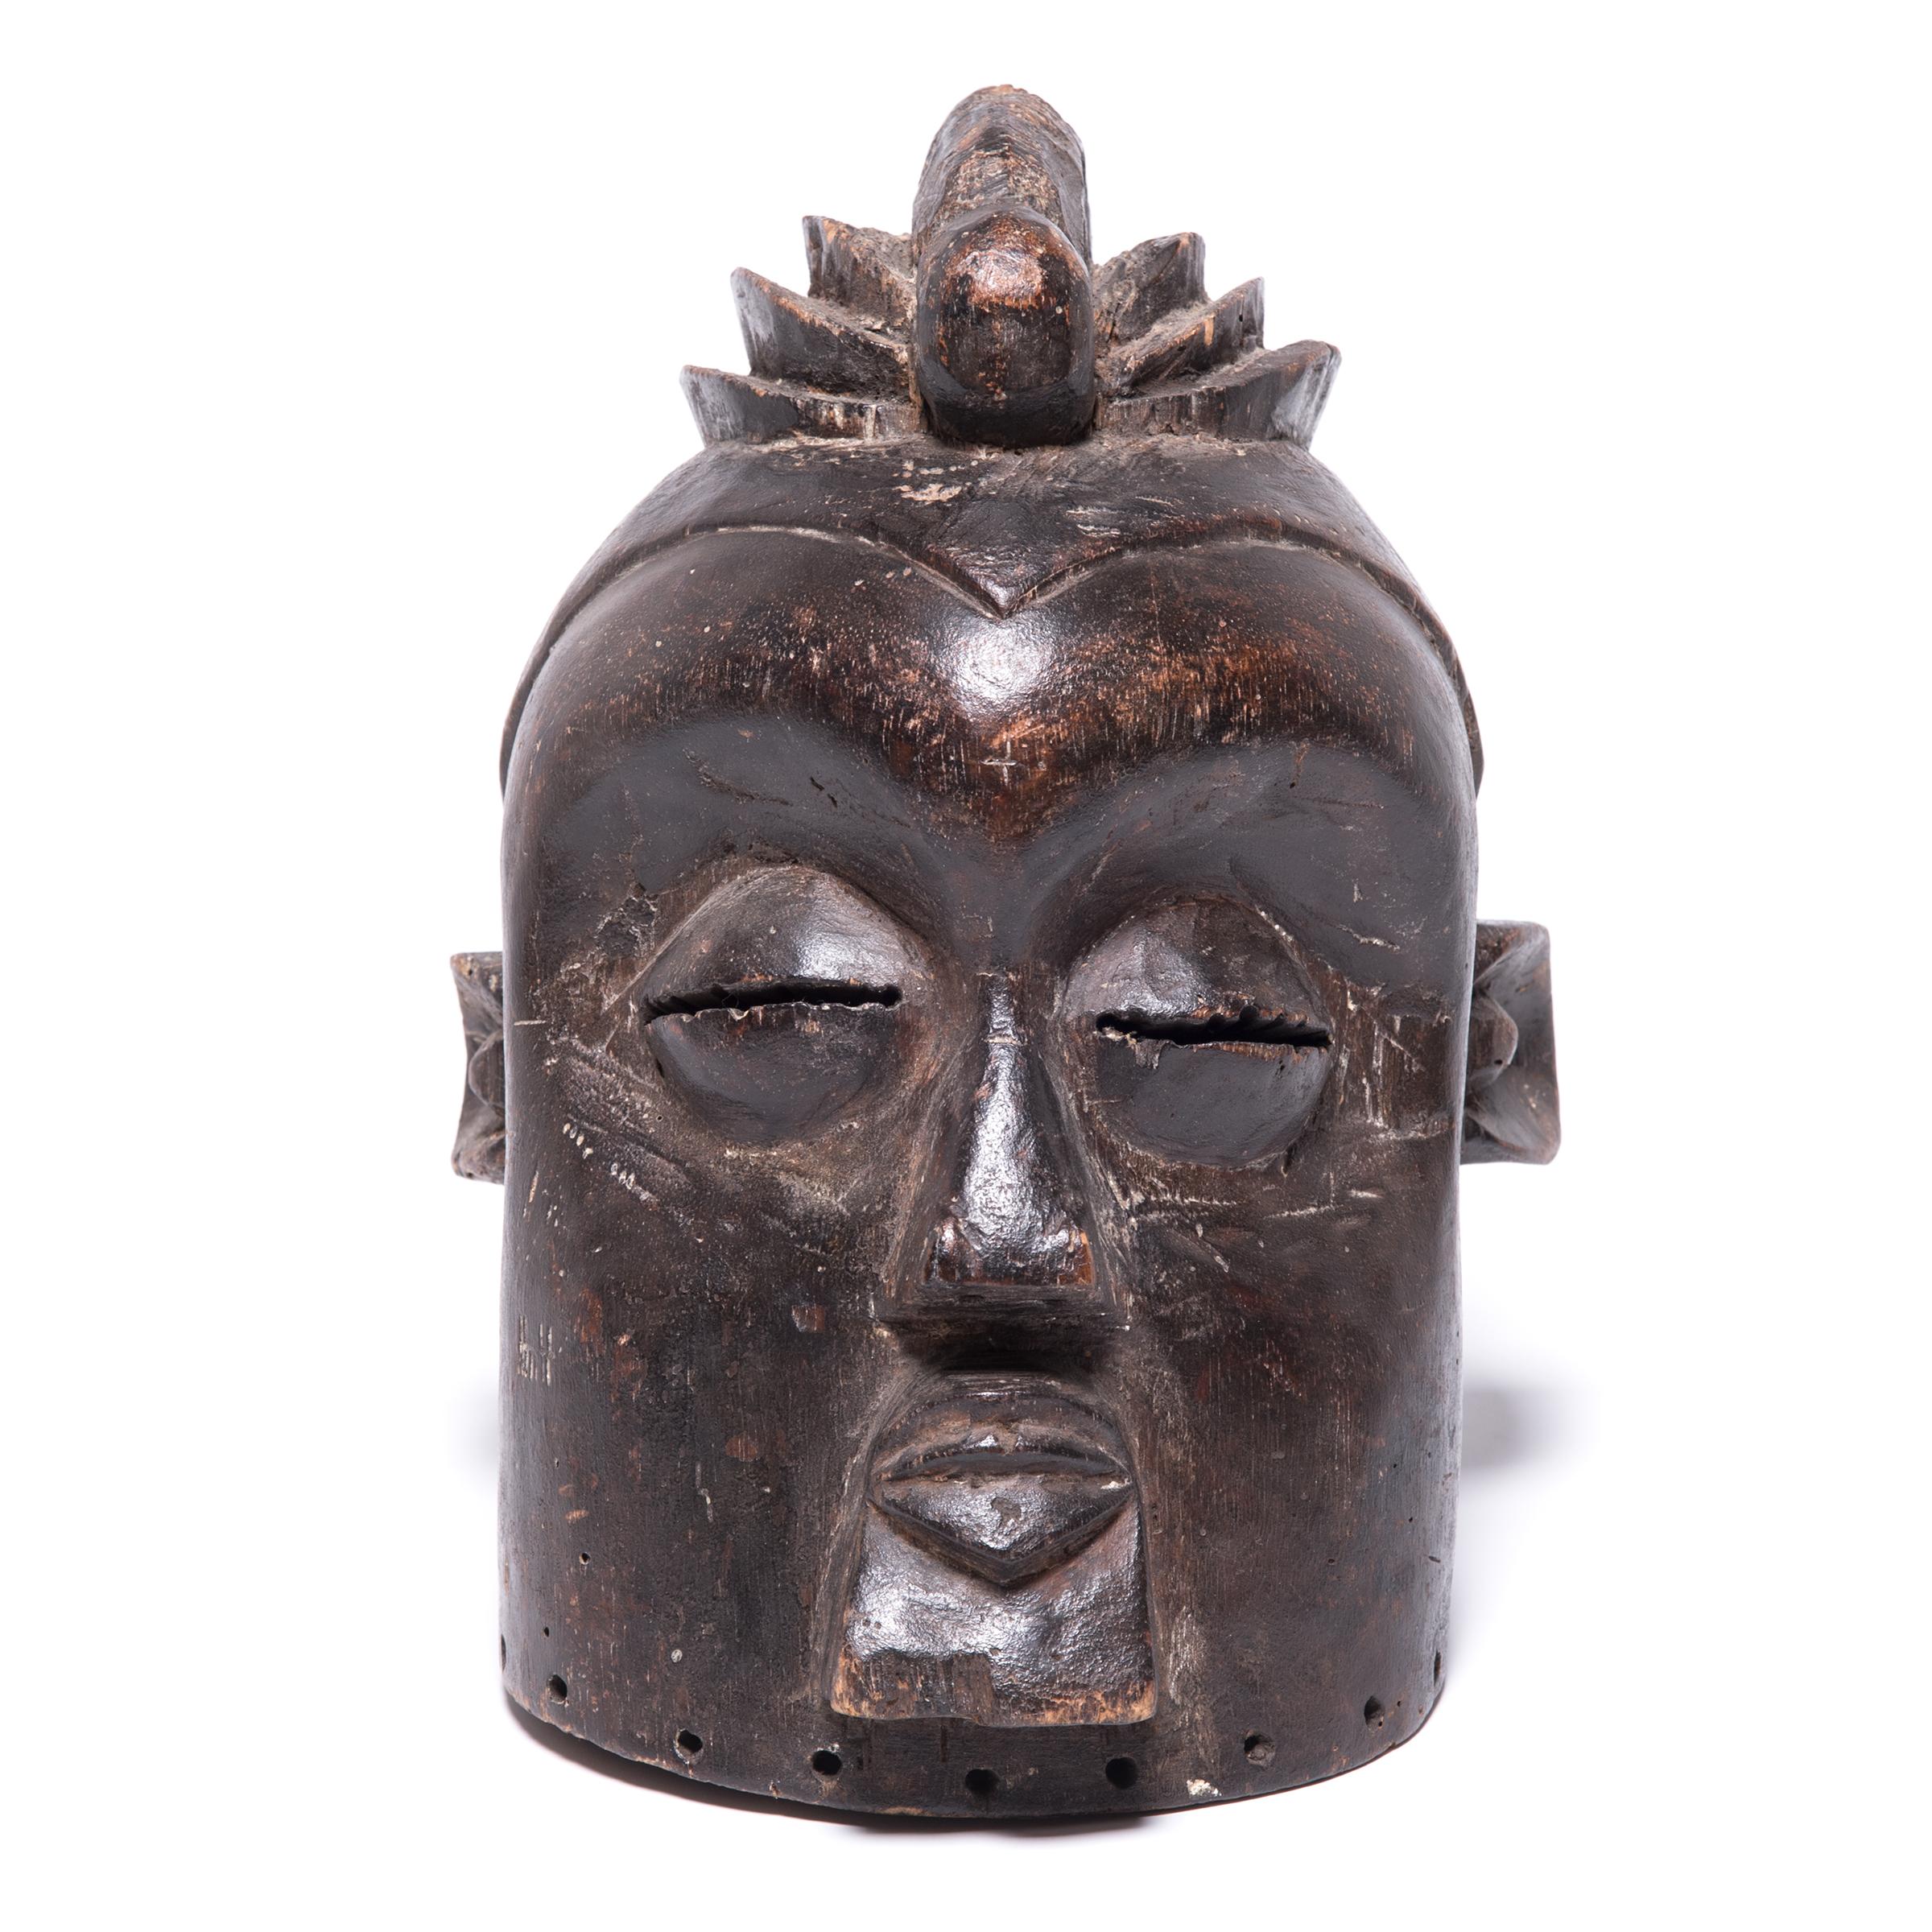 Während ihrer fünfhundertjährigen Geschichte im südlichen Kongo entwickelte der Stamm der Basuku eine Reihe komplizierter Rituale, die sich um ihre geschickten Maskenmacher drehten. Dieses besondere Exemplar wurde höchstwahrscheinlich nach dem